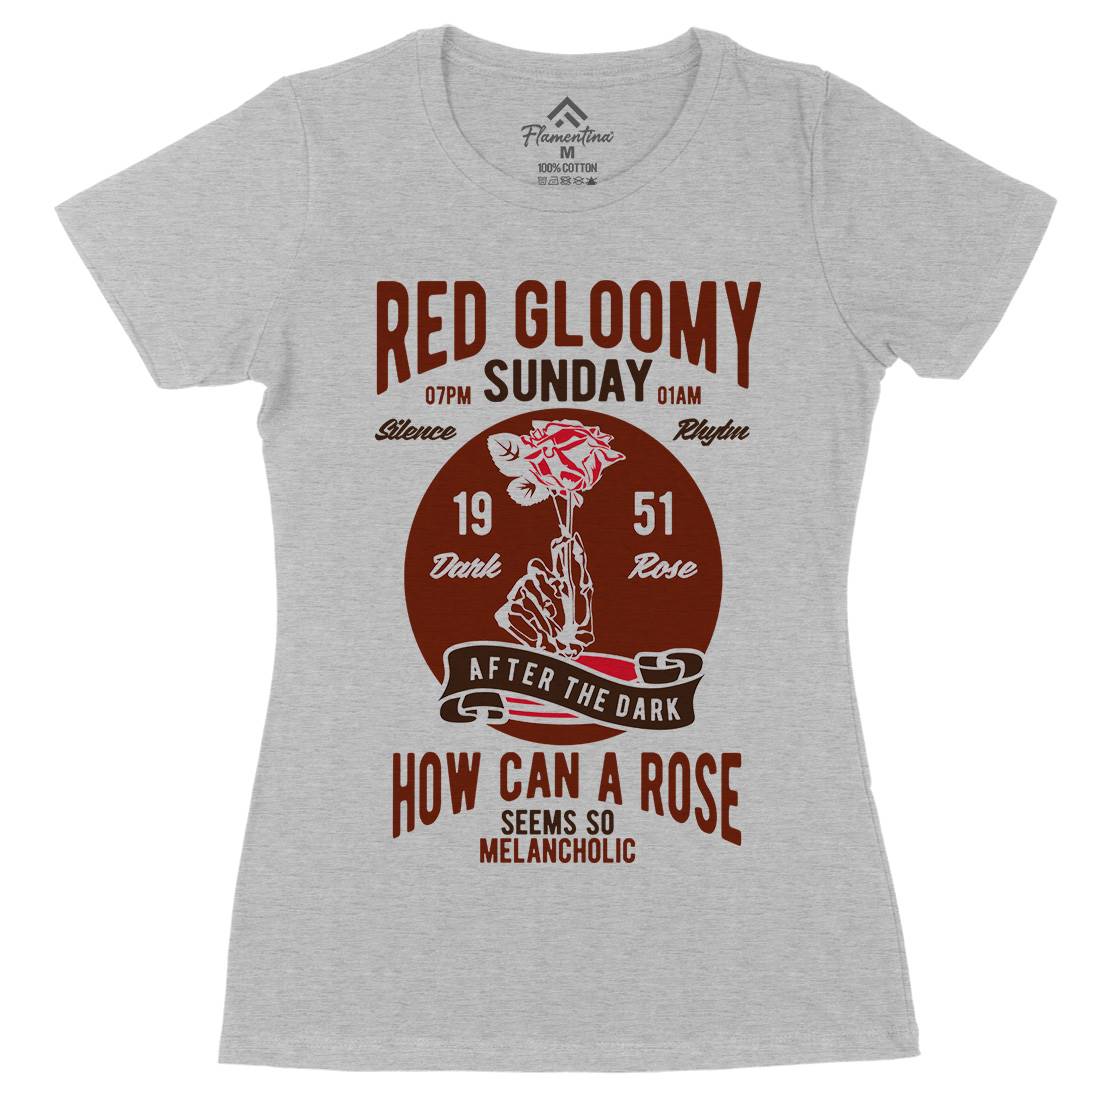 Red Gloomy Sunday Womens Organic Crew Neck T-Shirt Retro B437